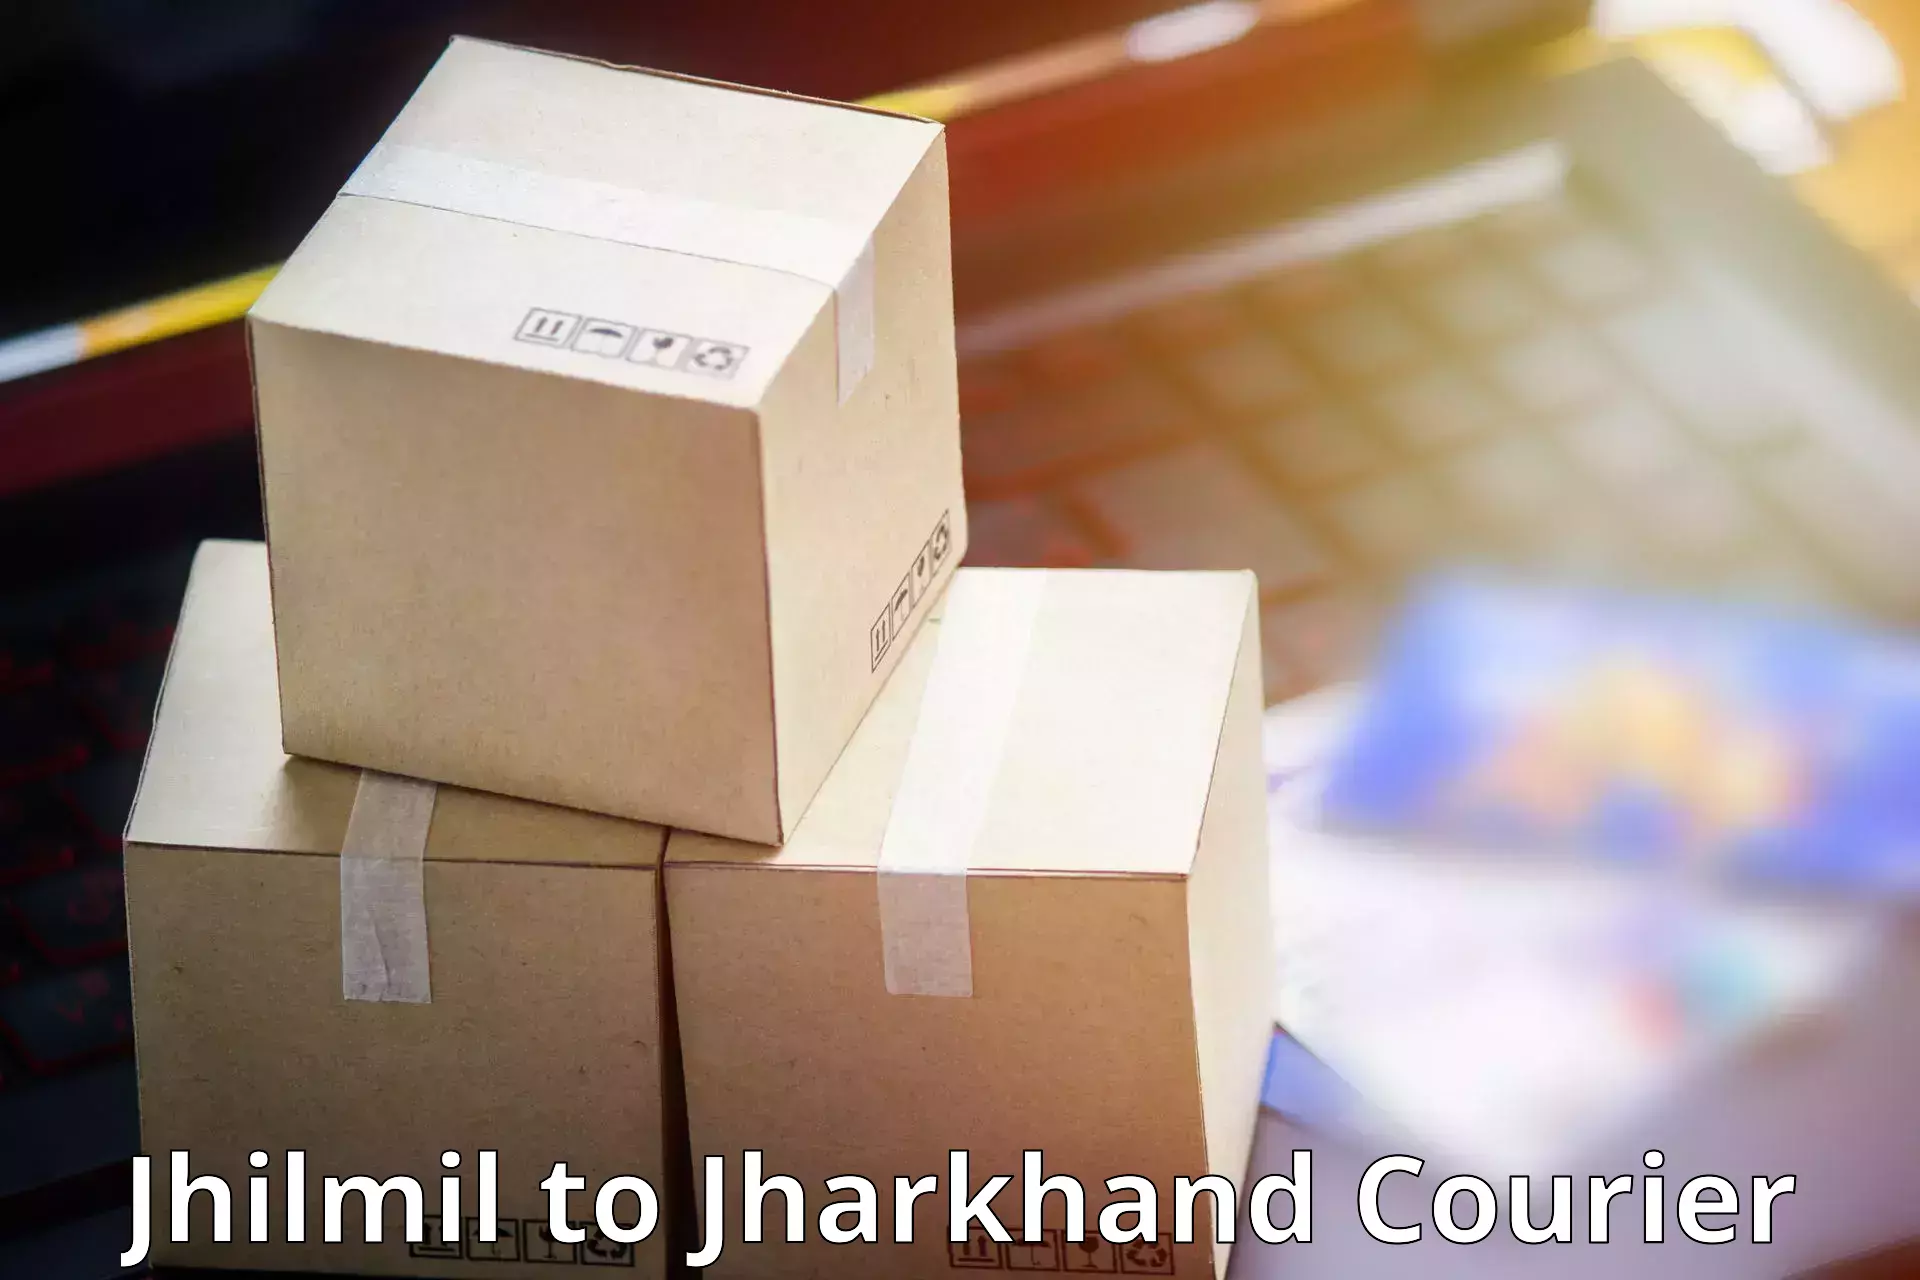 Professional parcel services Jhilmil to Rajmahal